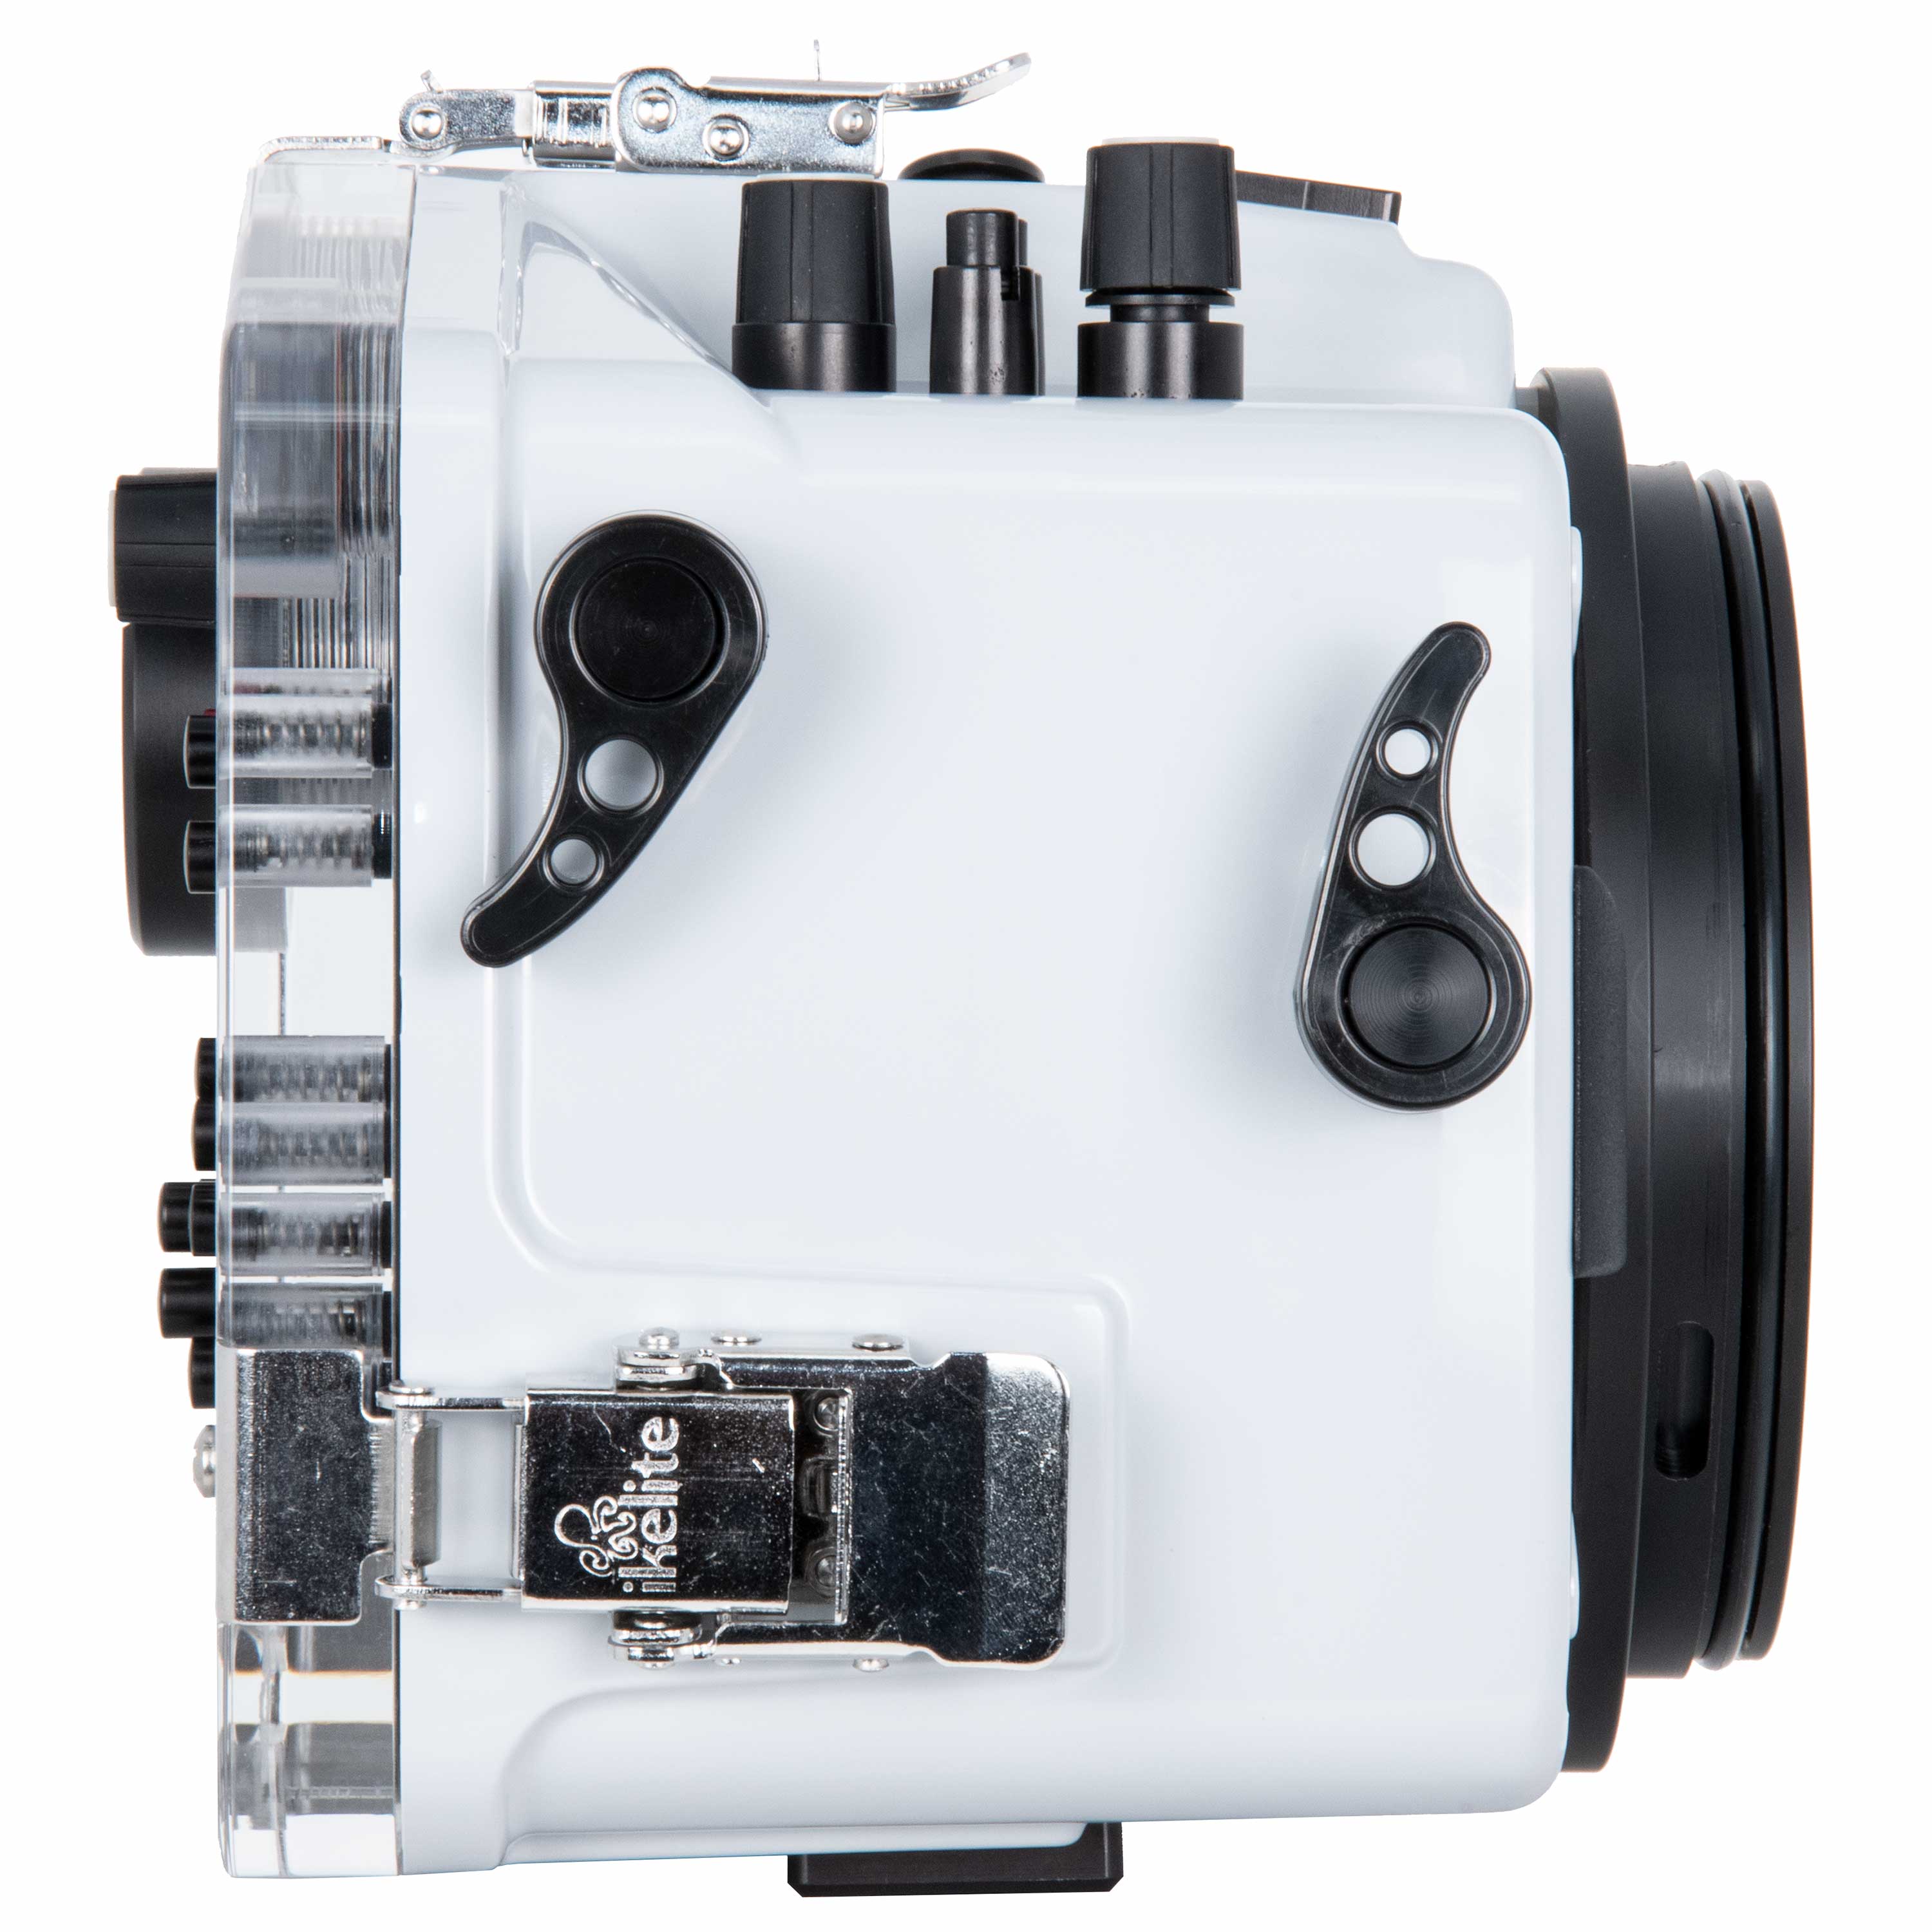 Ikelite 200DL Underwater Housing for Canon EOS 850D Rebel T8i, Kiss X10i DSLR Cameras